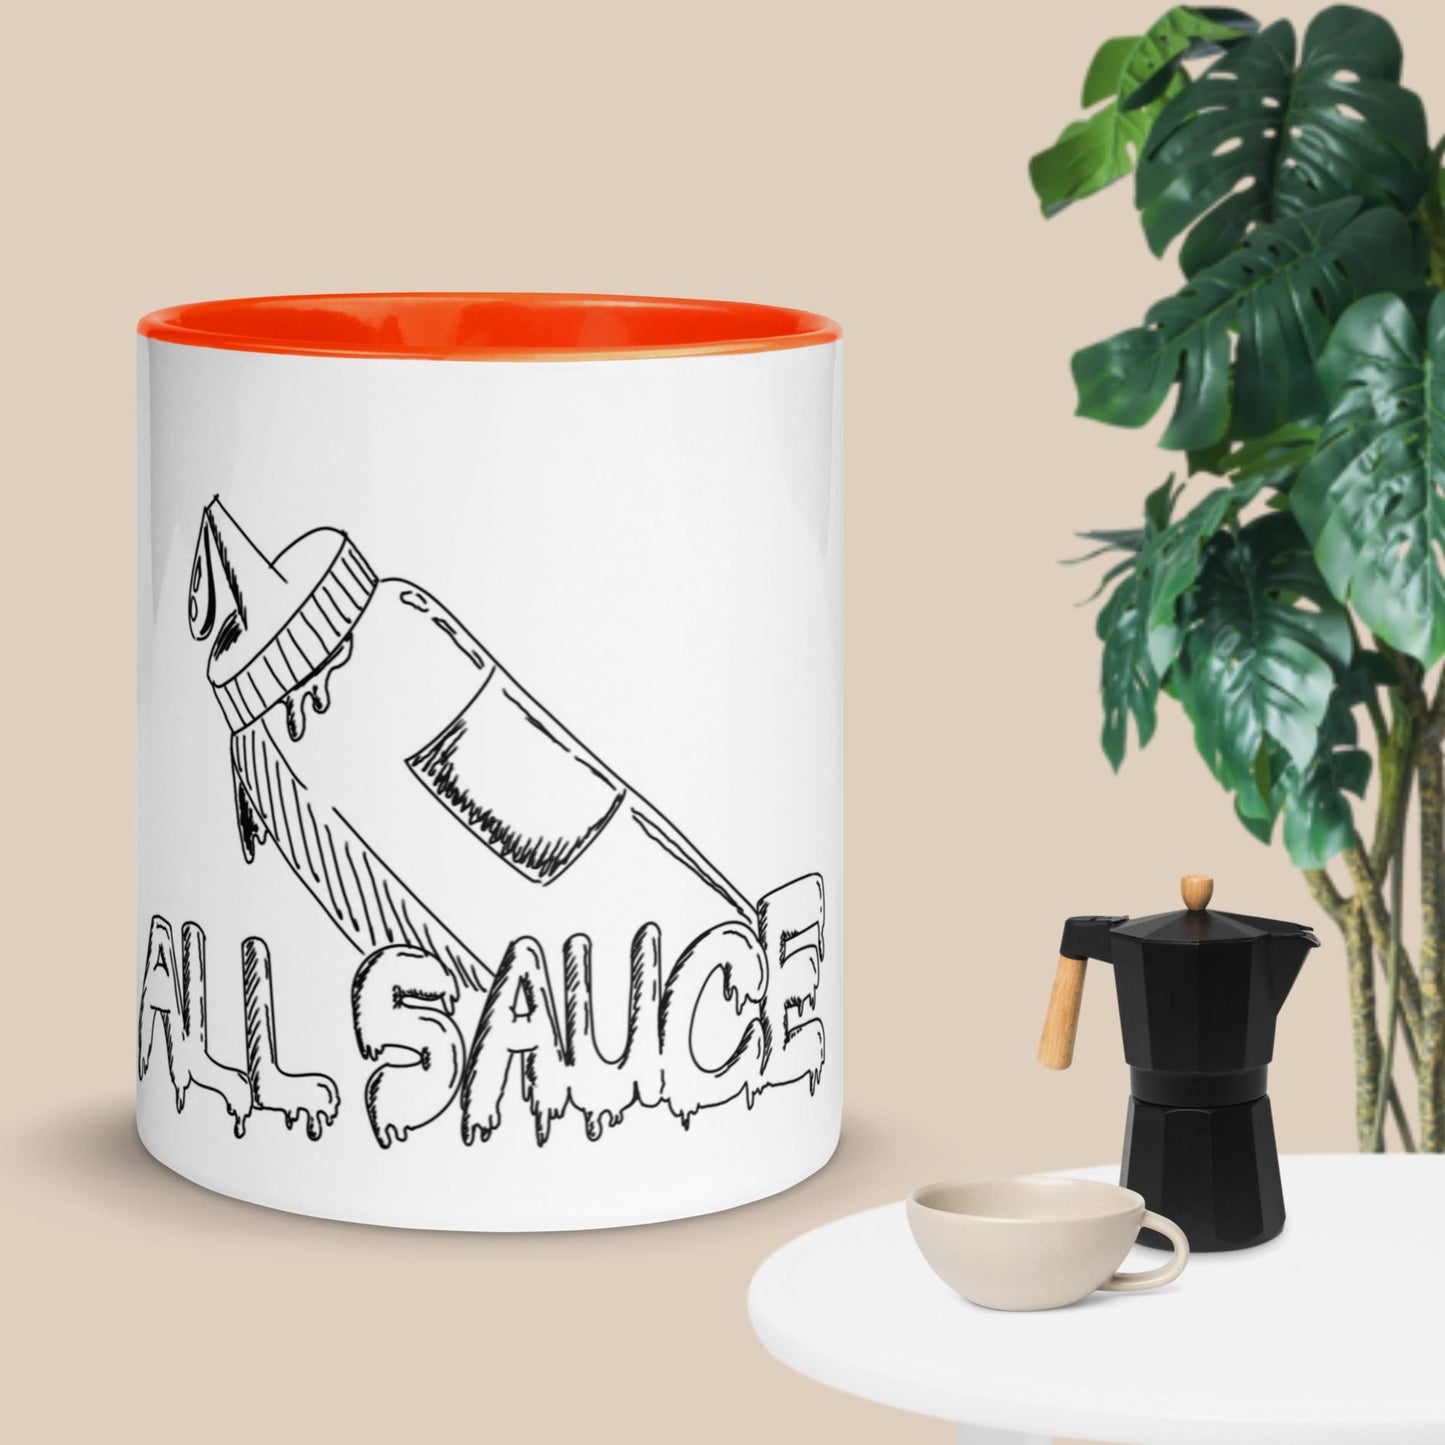 All-Sauce Mug